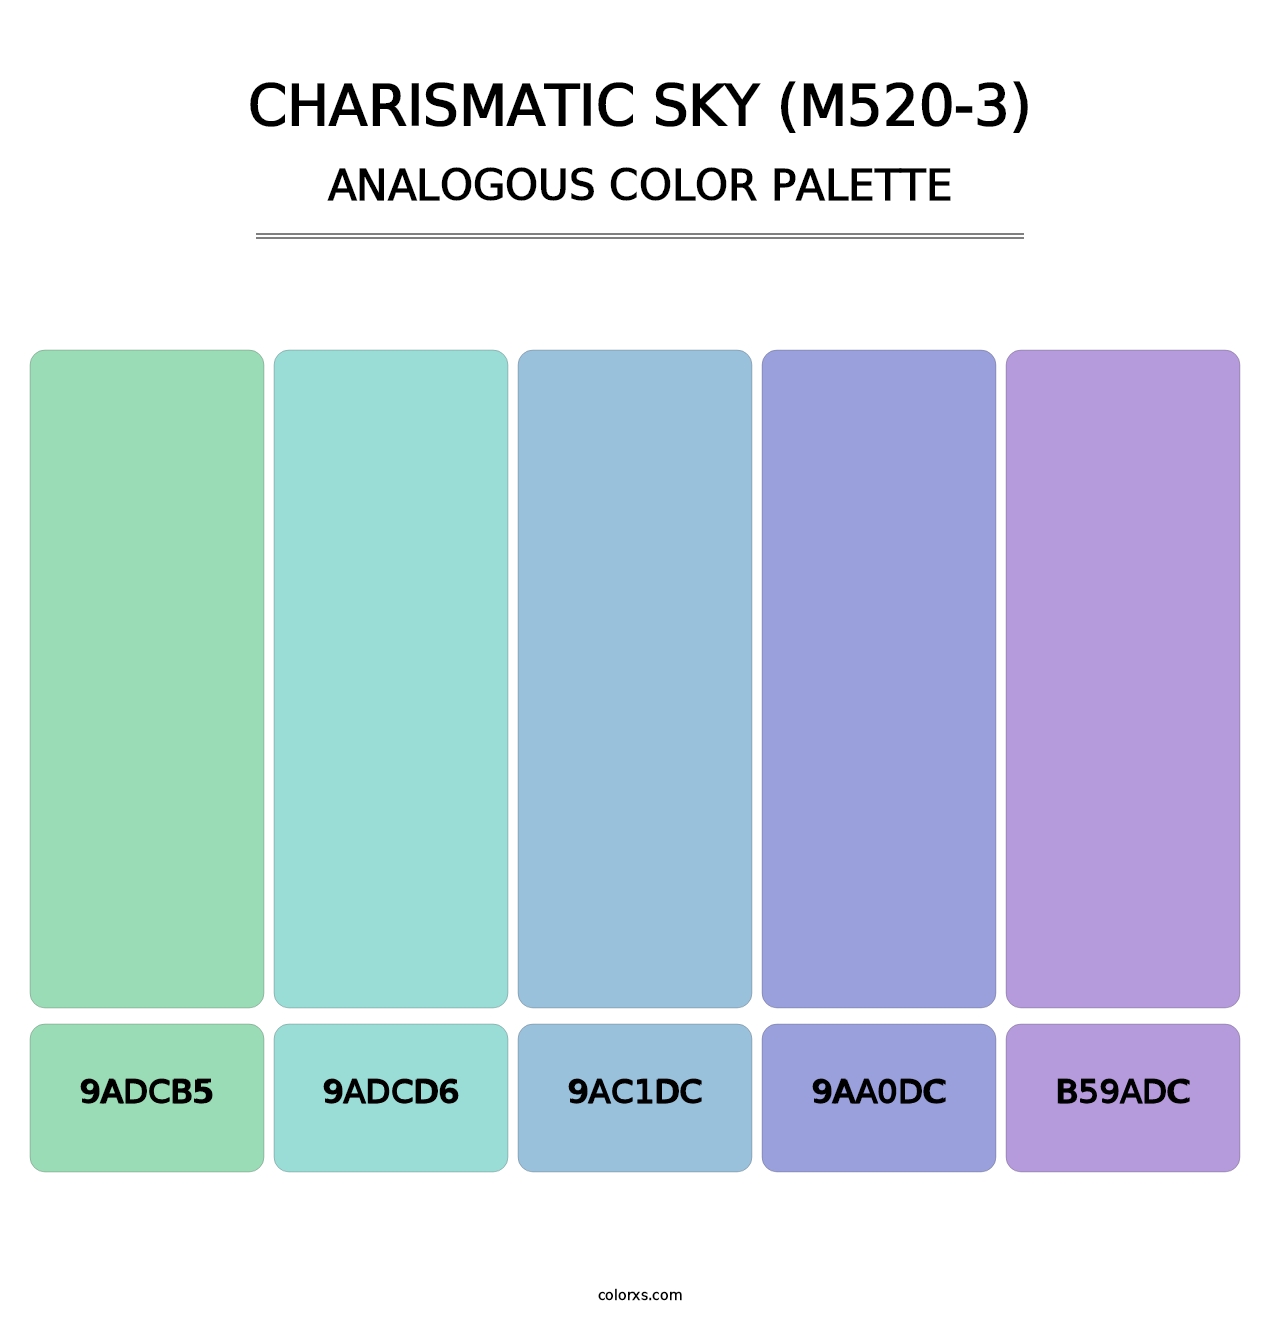 Charismatic Sky (M520-3) - Analogous Color Palette